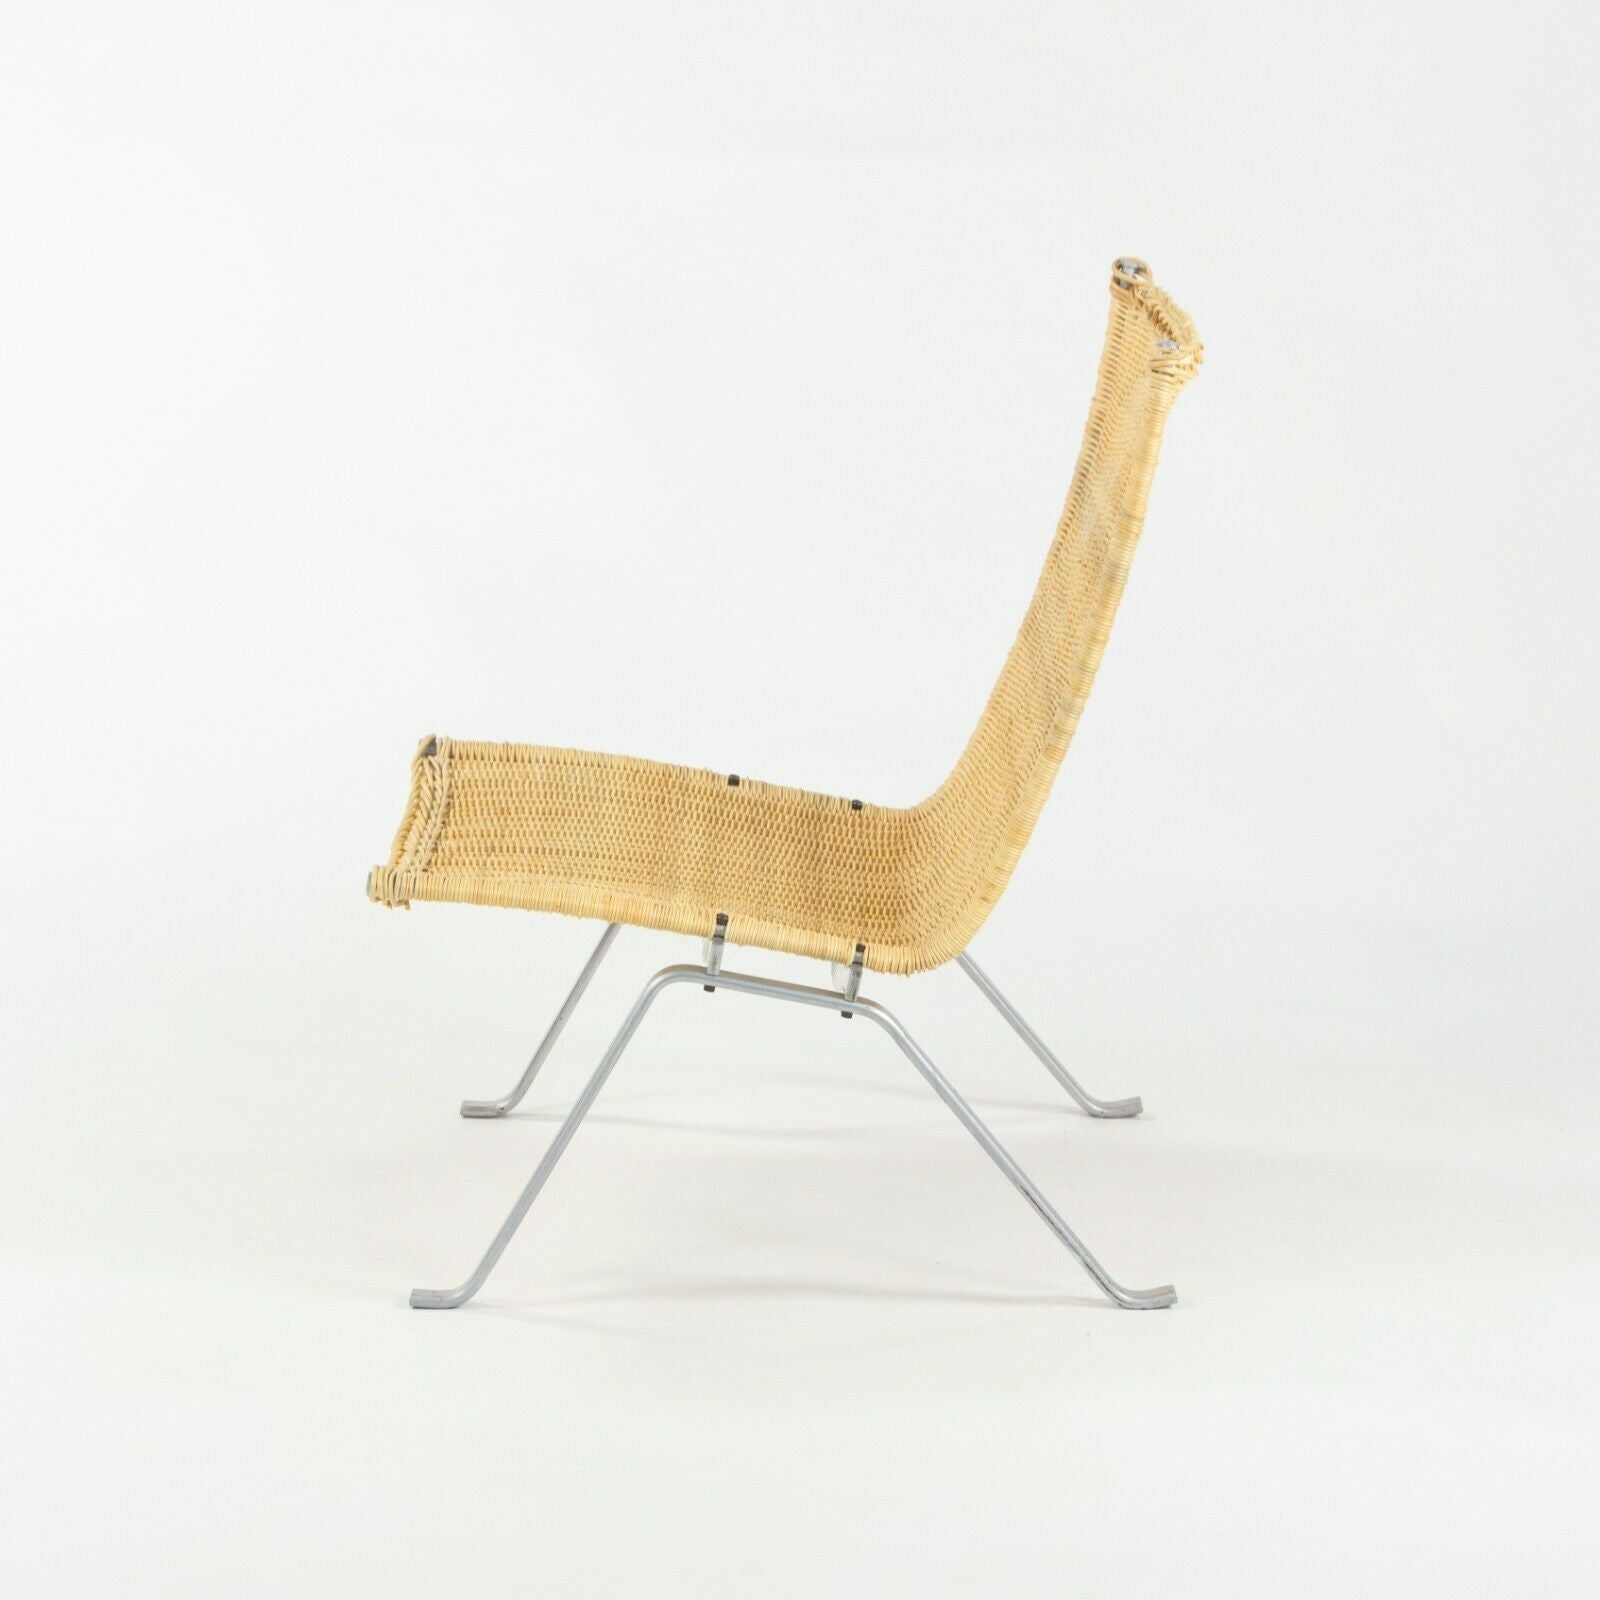 SOLD Poul Kjaerholm for E Kold Christensen Denmark PK22 Lounge Chair with New Wicker